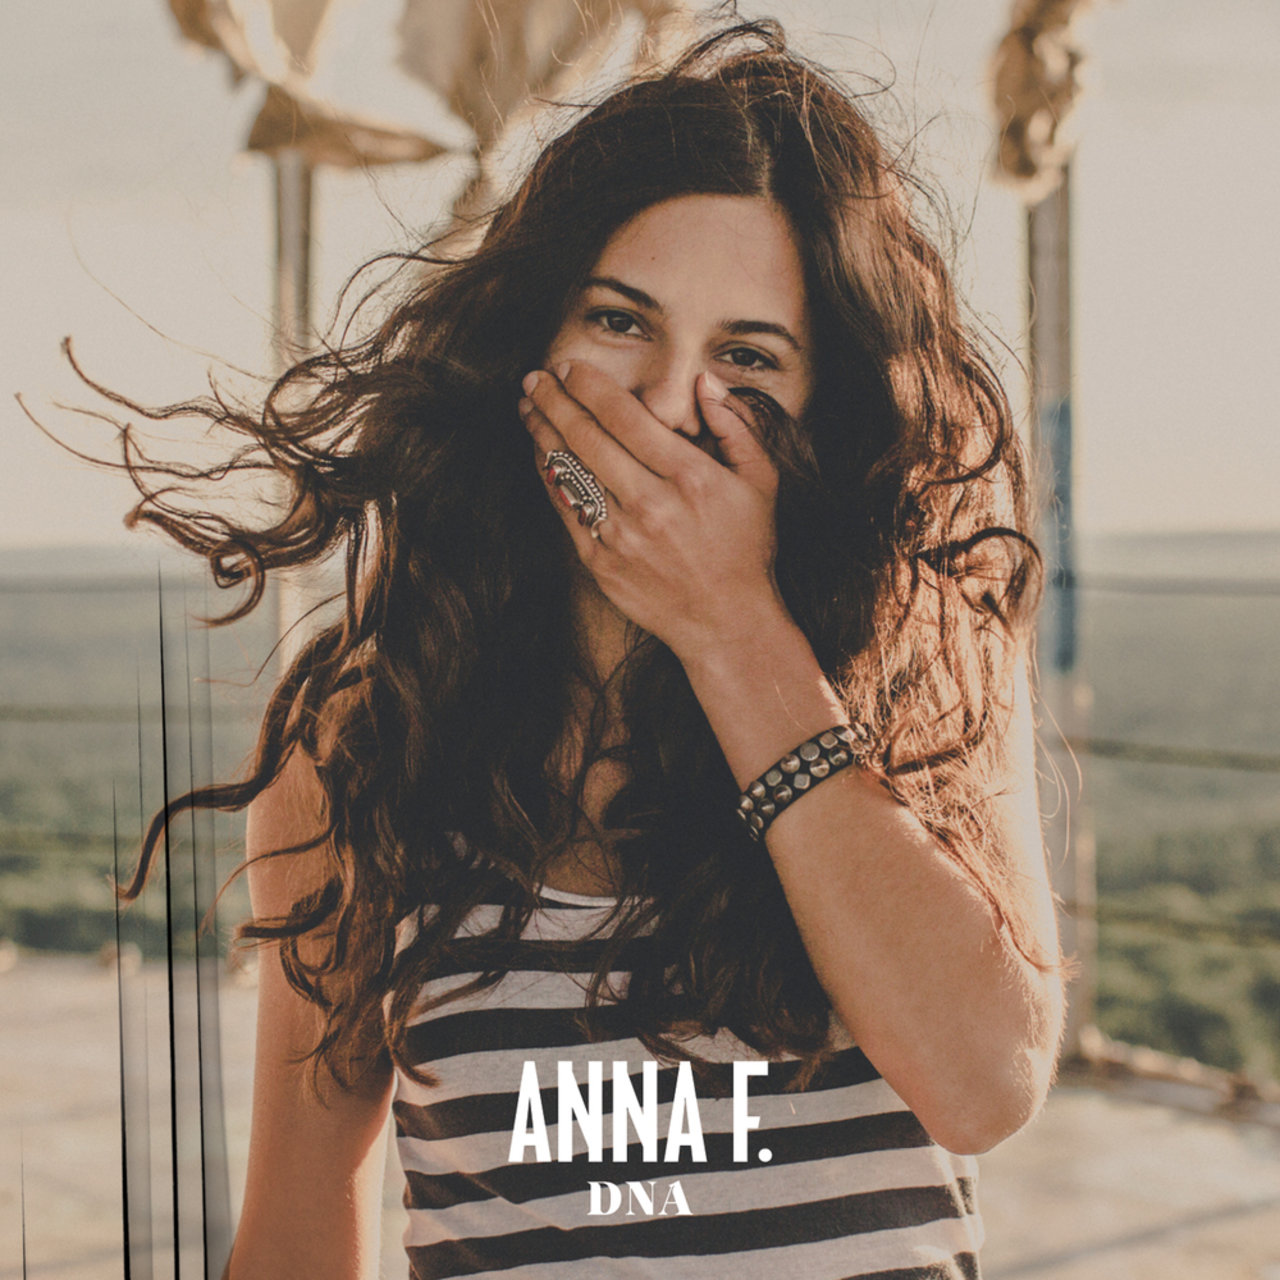 Anna F. — DNA cover artwork